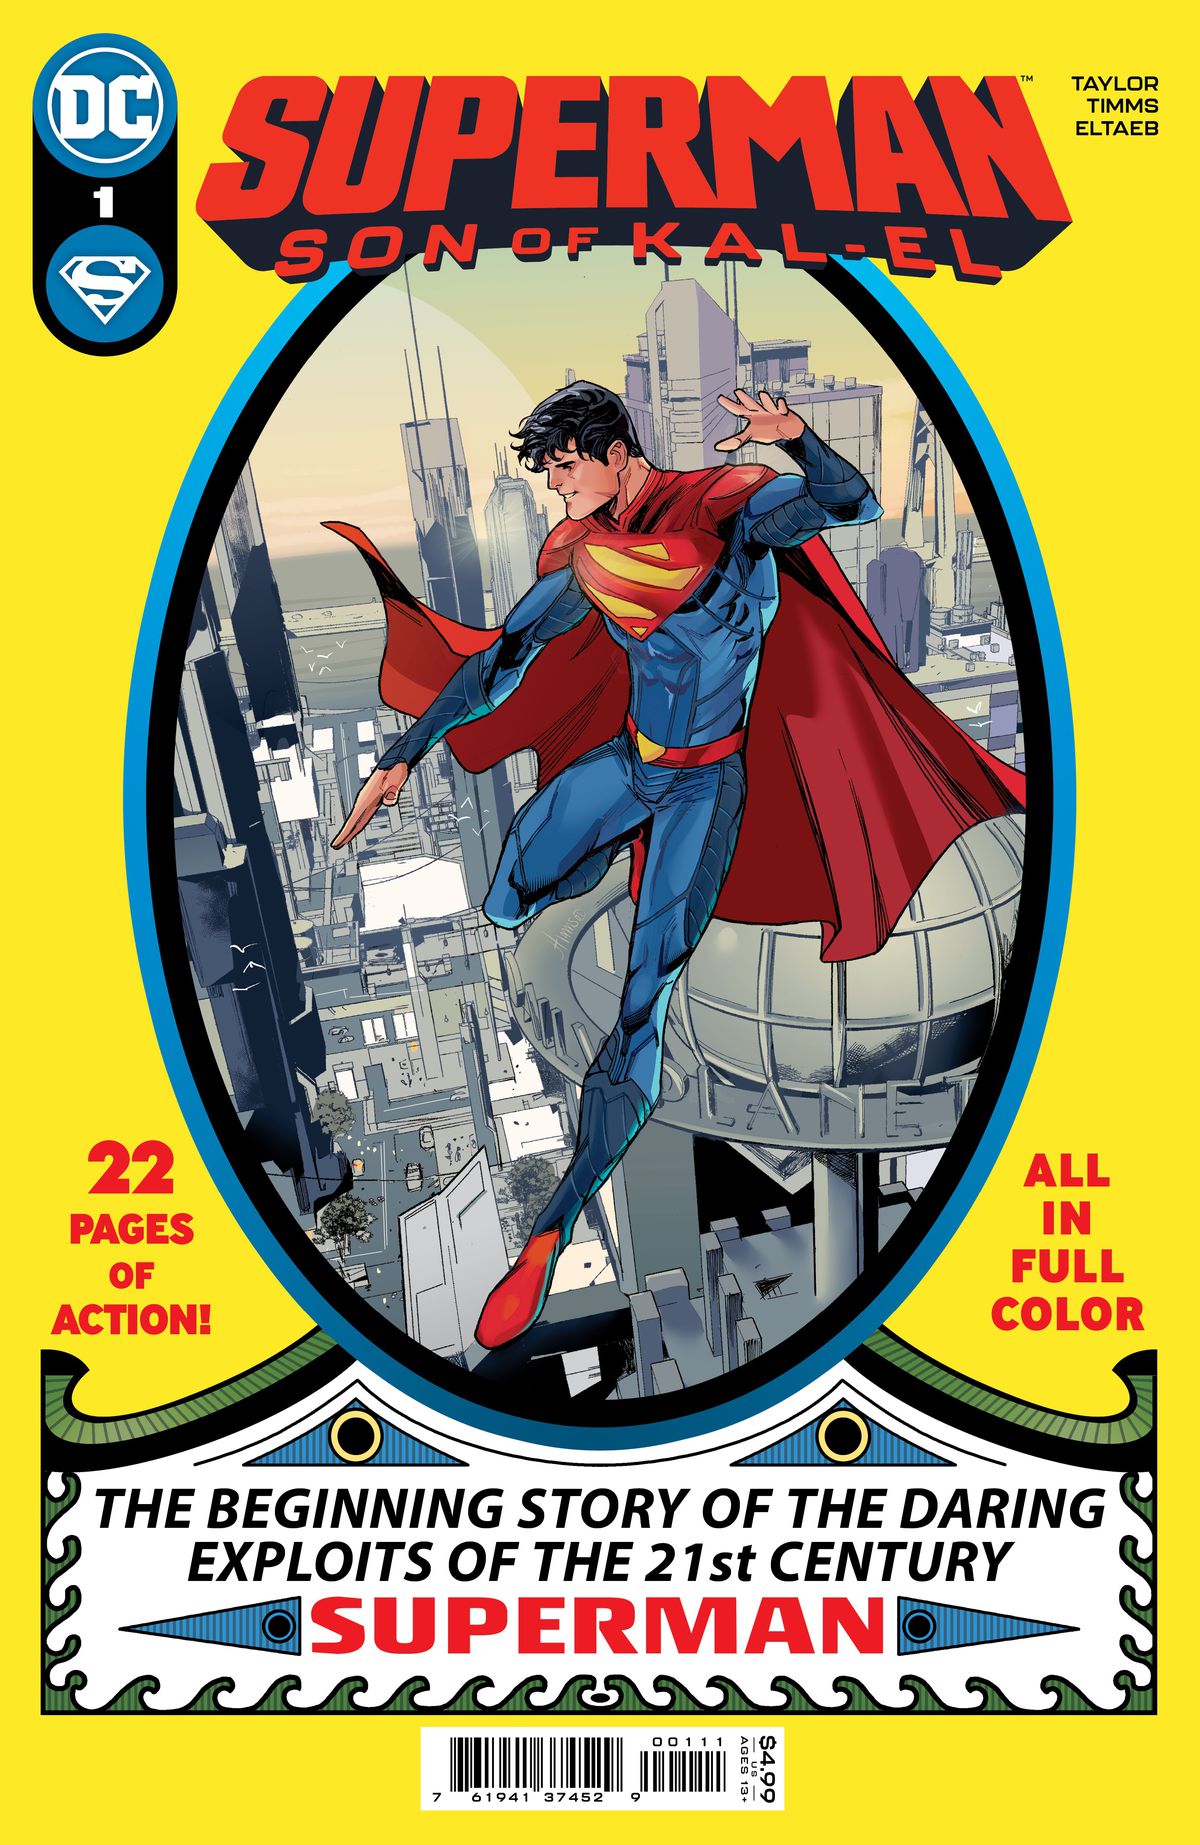 Jon Kent si libra sopra Metropolis in un omaggio alla copertina di Superman #1, nella copertina di Superman: Son of Kal-El #1, DC Comics (2021).